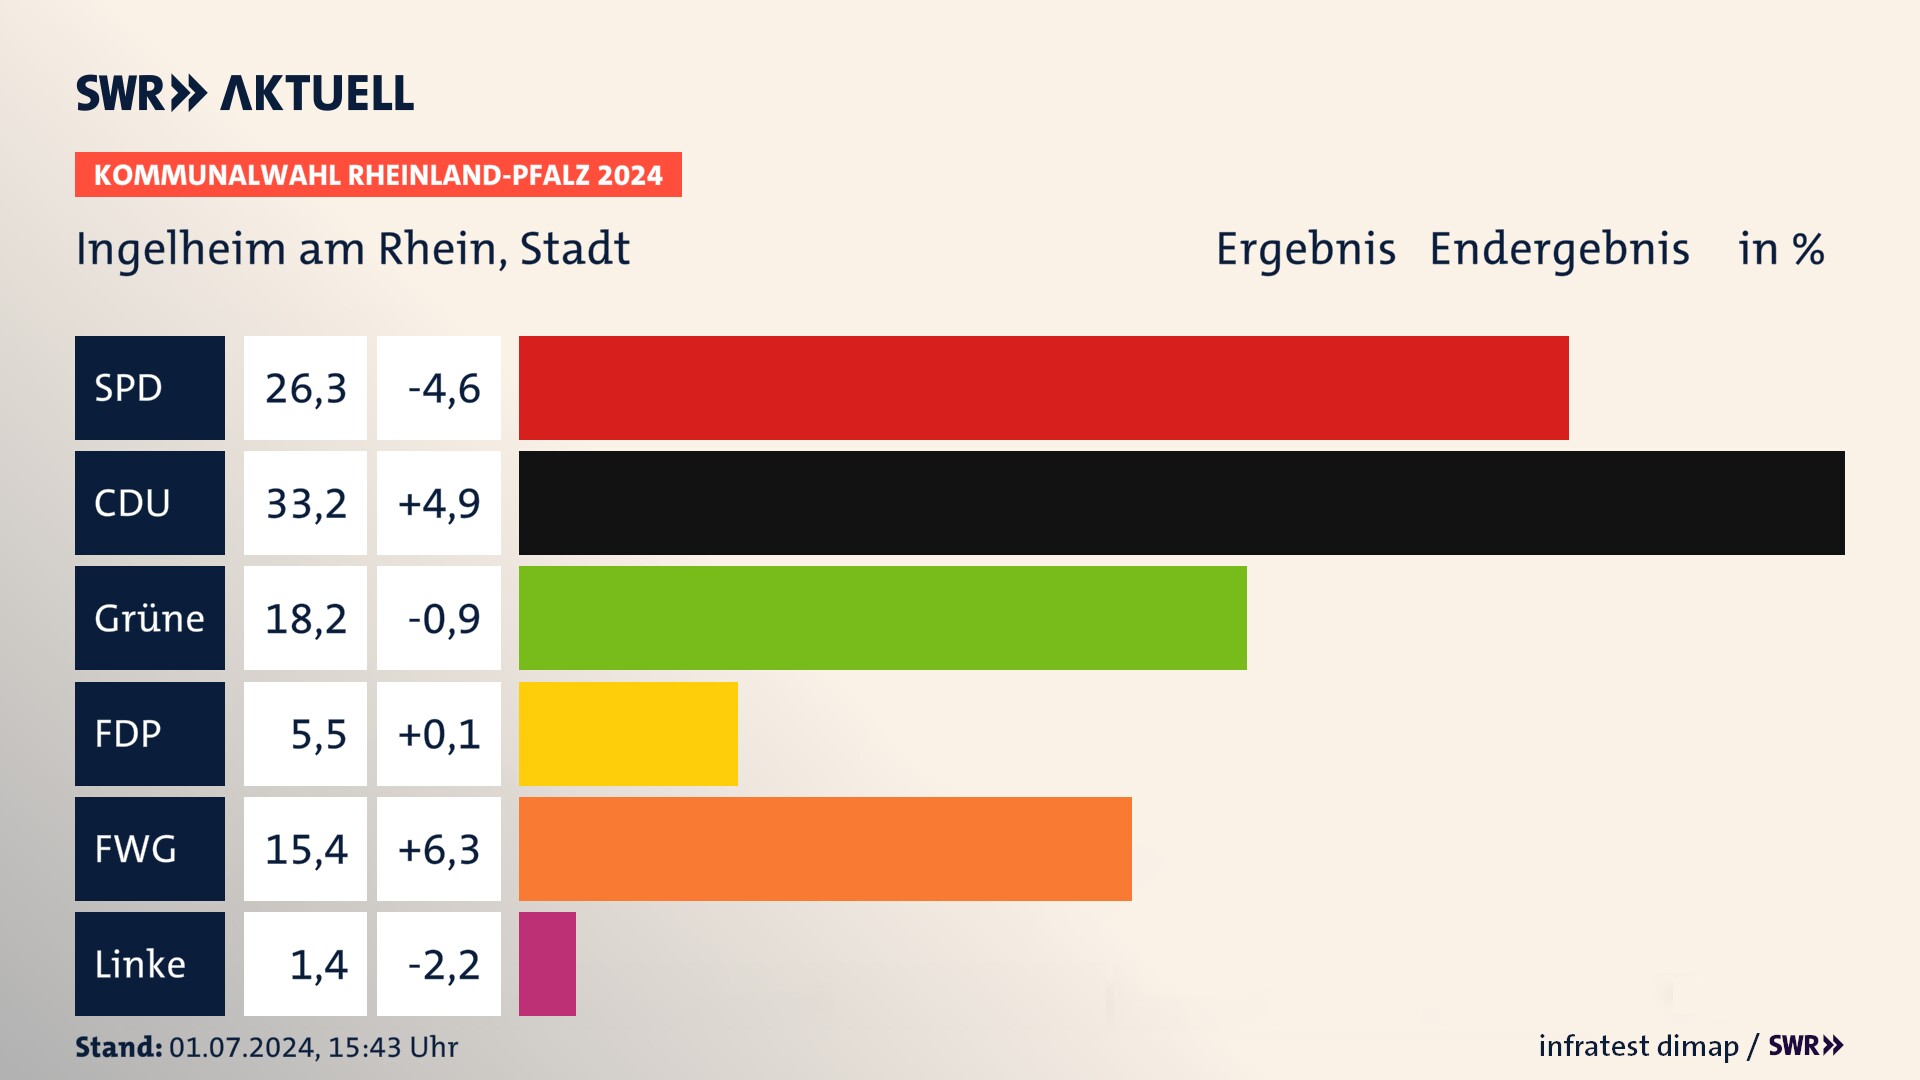 Kommunalwahl 2024 Endergebnis Zweitstimme für Ingelheim am Rhein, Stadt. In Ingelheim am Rhein, Stadt erzielt der SPD 26,3 Prozent der gültigen  Stimmen. Der CDU landet bei 33,2 Prozent. Der Grüne erreicht 18,2 Prozent. Der FDP kommt auf 5,5 Prozent. Der FWG landet bei 15,4 Prozent. Der Linke erreicht 1,4 Prozent.